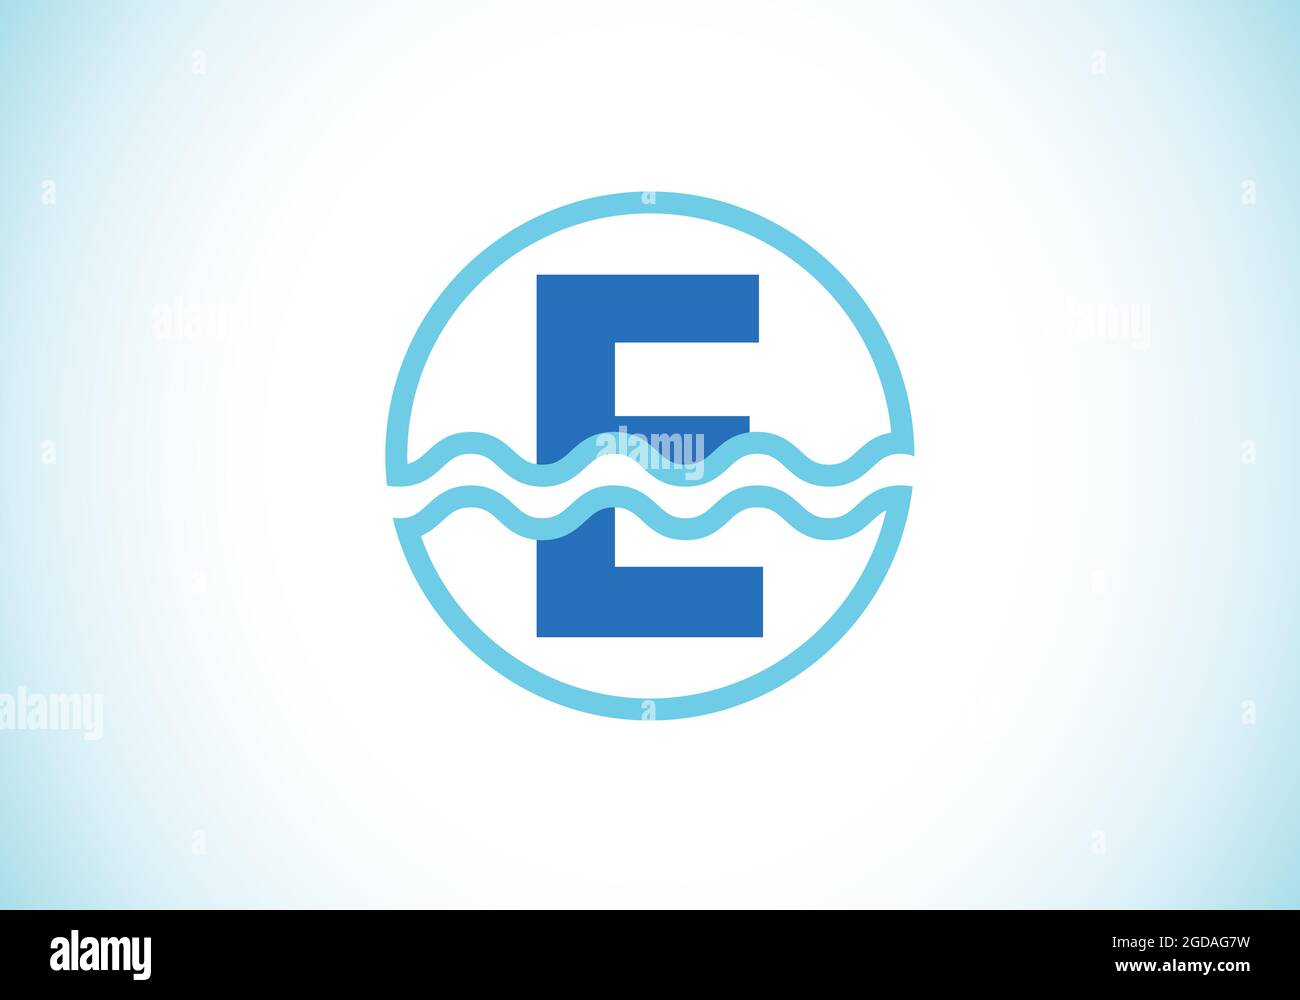 Anfängliches E-Monogramm-Alphabet in einem Kreis mit Wasserwellen. Wasserwellen-Logo-Design. Logo für den Ozean, das Seegeschäft und die Unternehmensidentität Stock Vektor